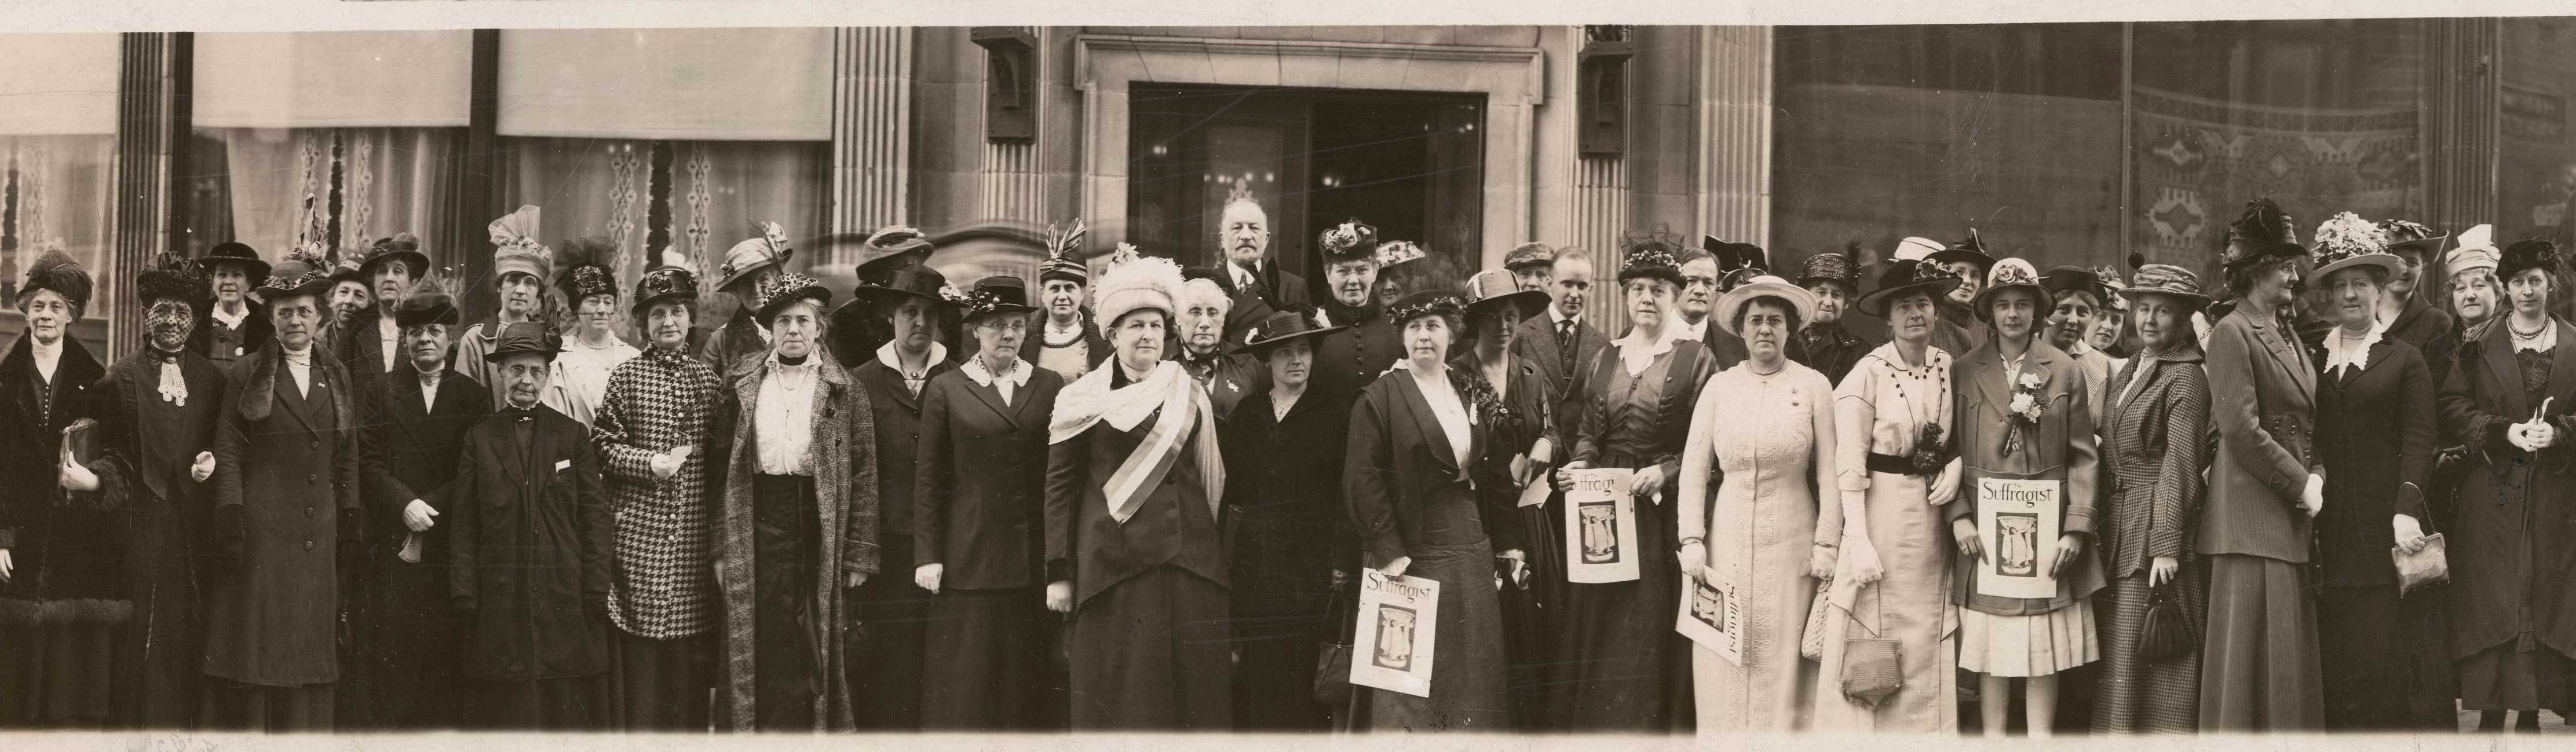 womens suffrage